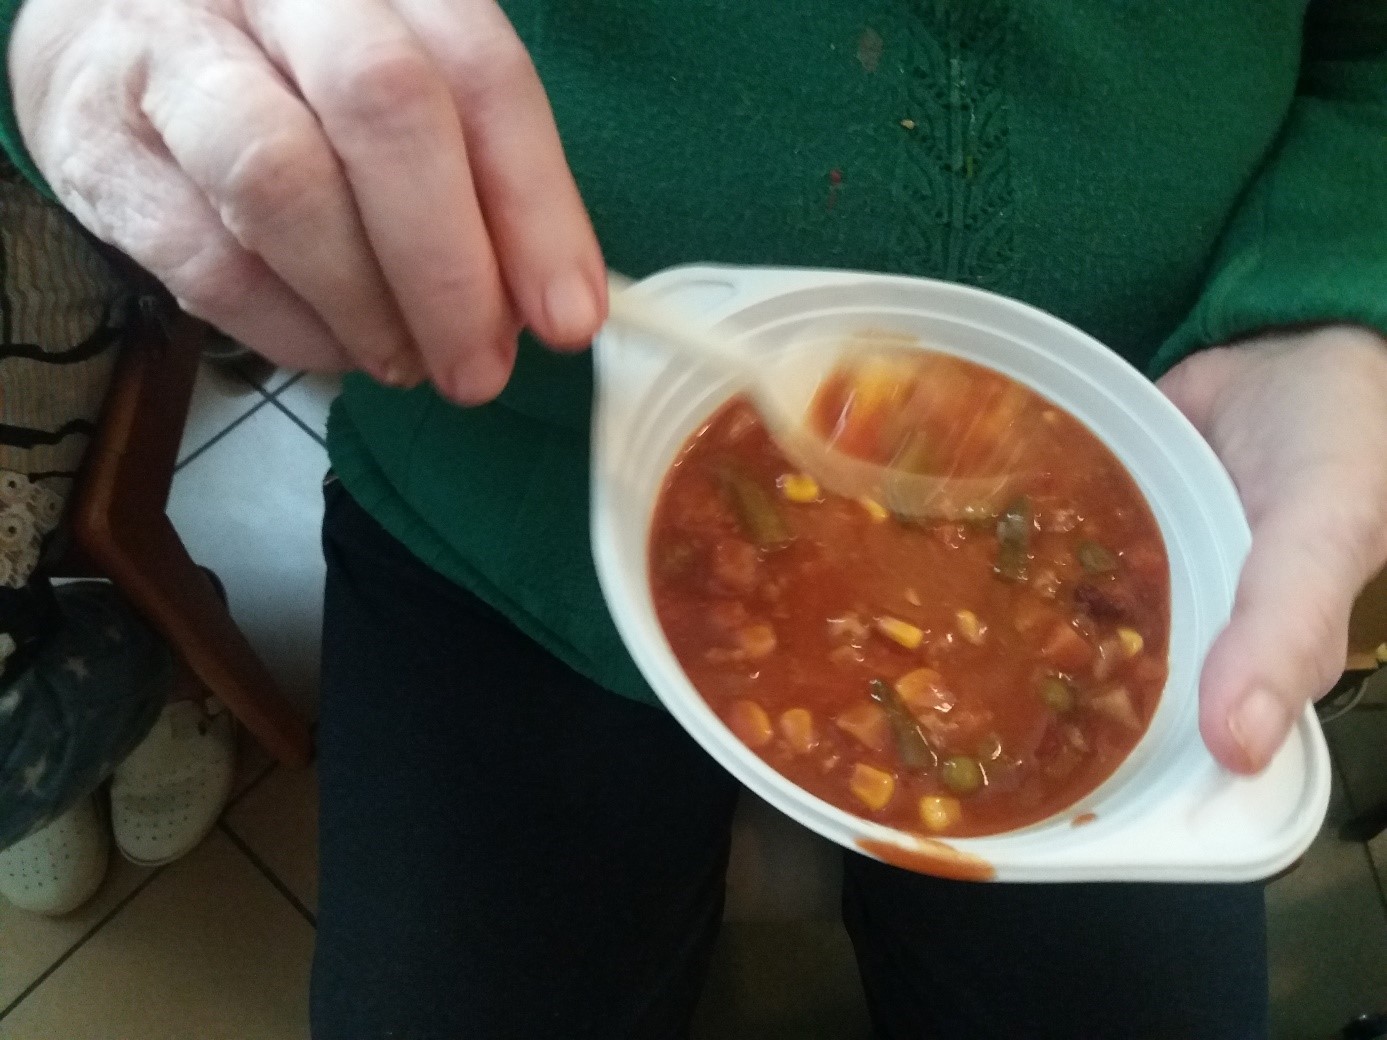 Na zdjęciu widać zupę meksykańską na talerzu